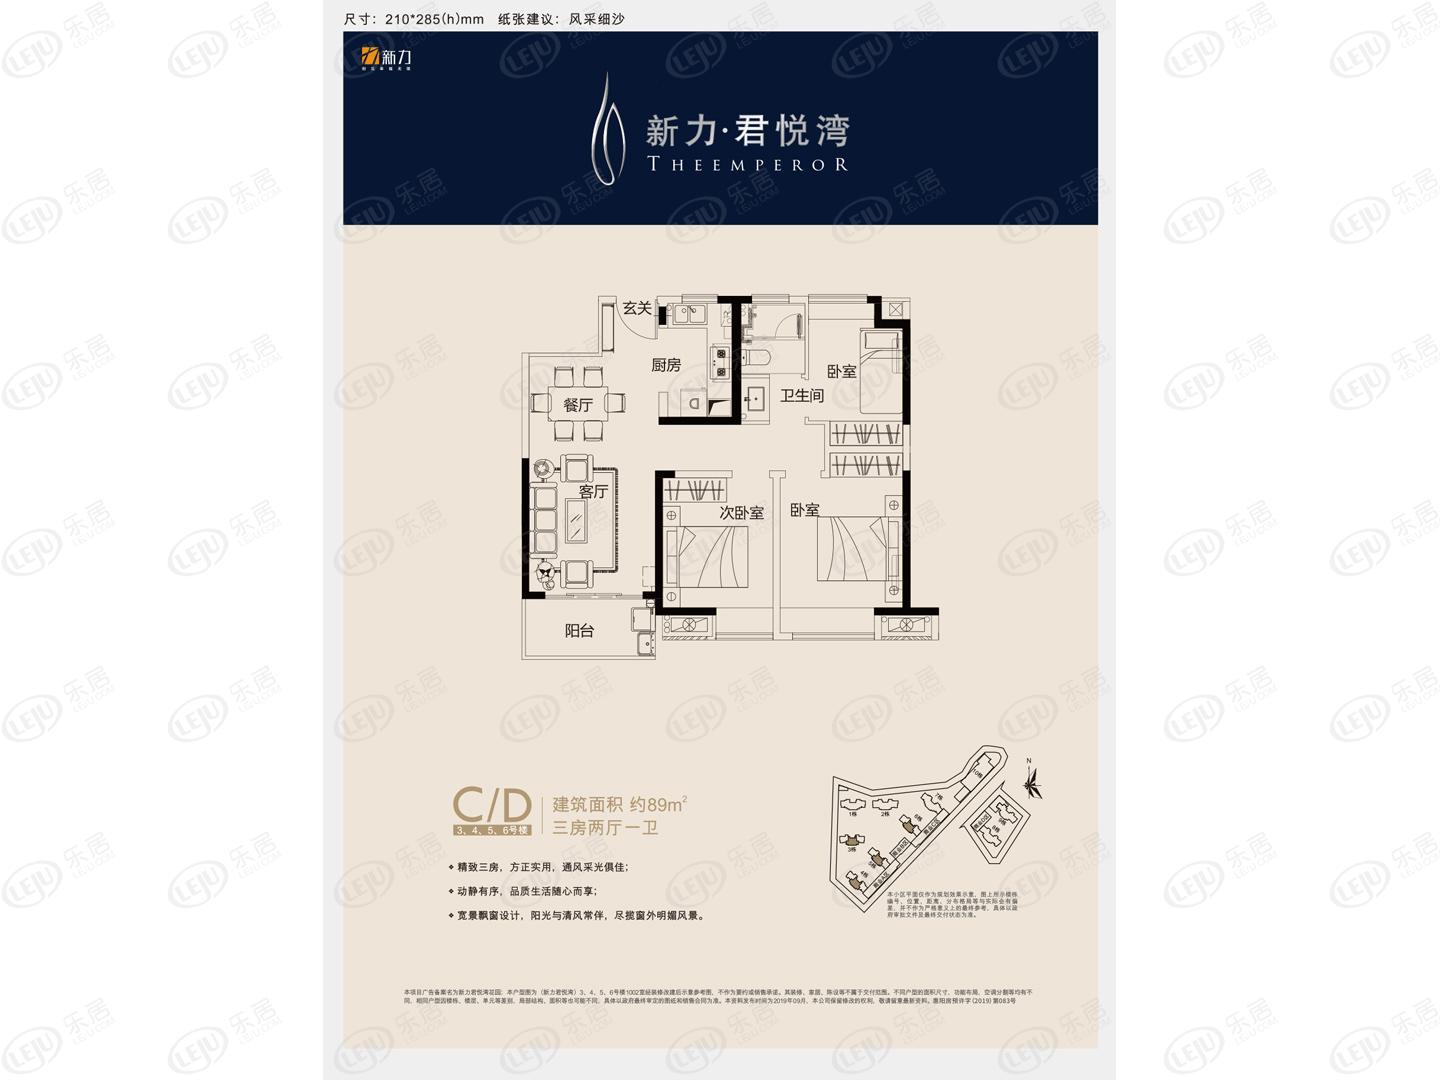 新力君悦湾花园住宅,公寓户型介绍 均价约9200元/㎡